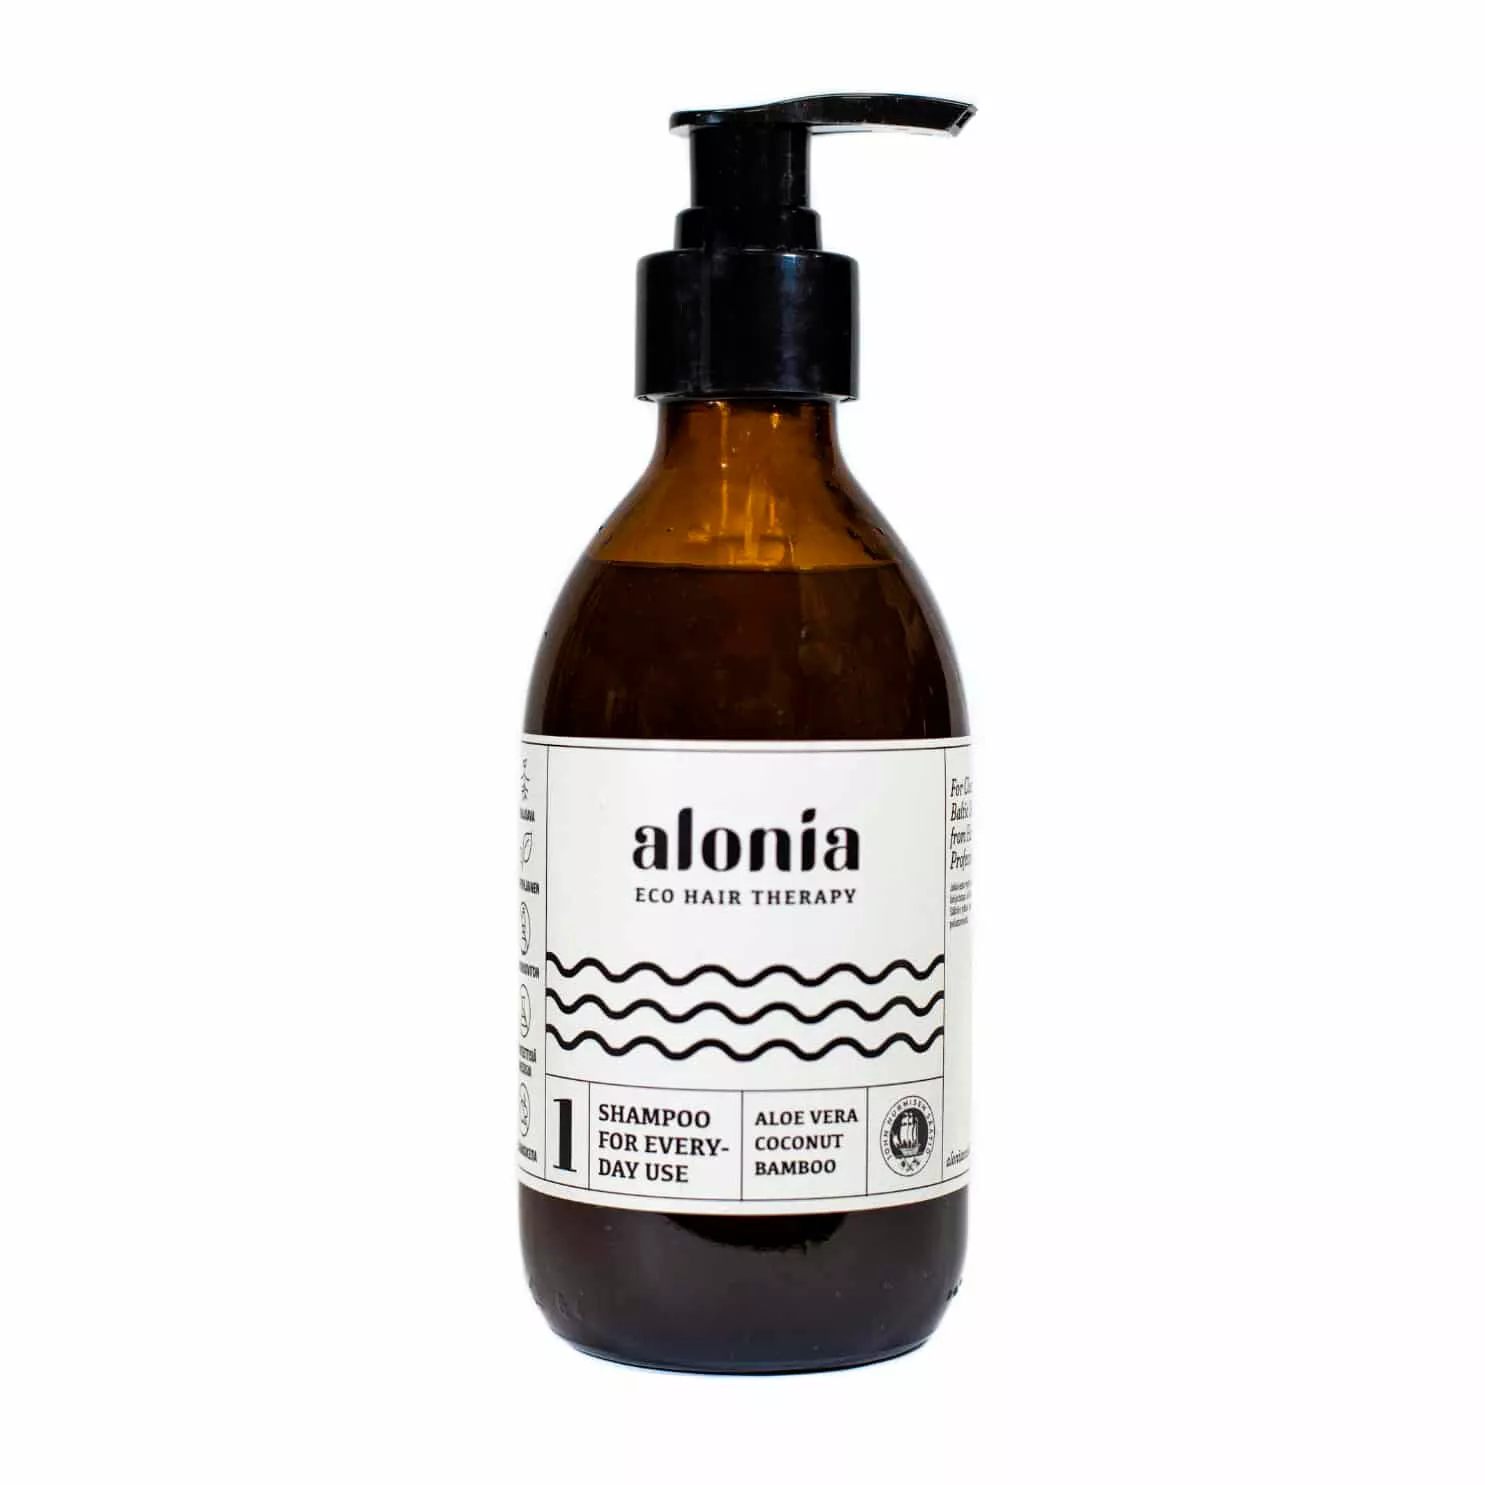 Biohajoava shampoo. Alonia 1. Shampoo for everyday use.